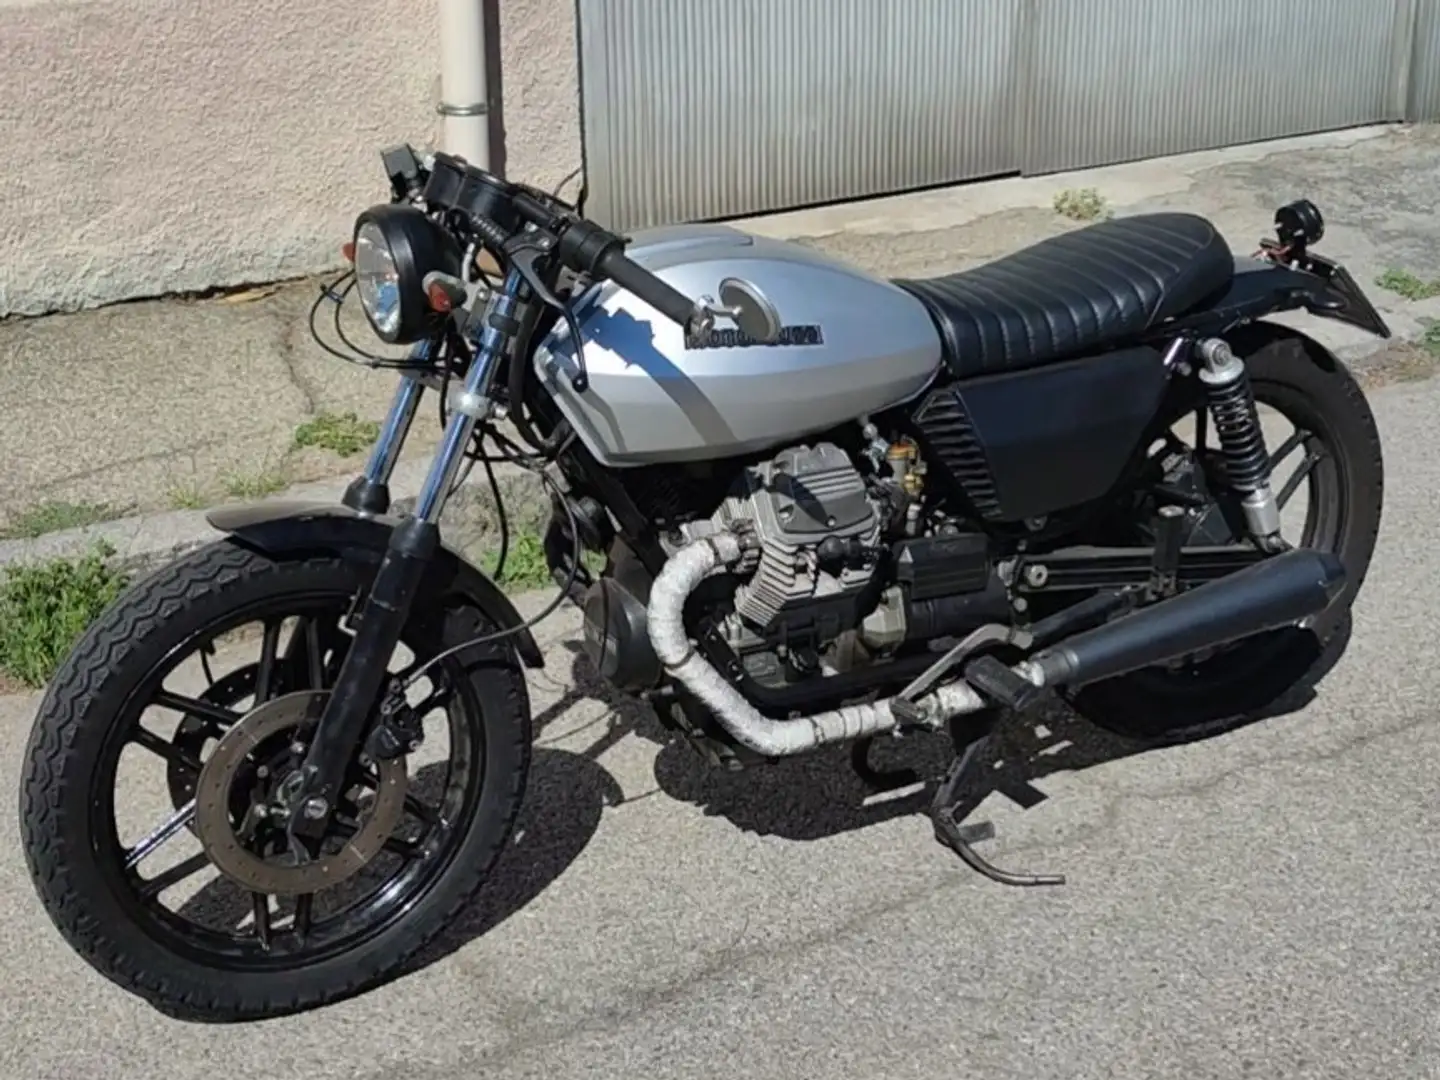 Moto Guzzi V 50 Silber - 1